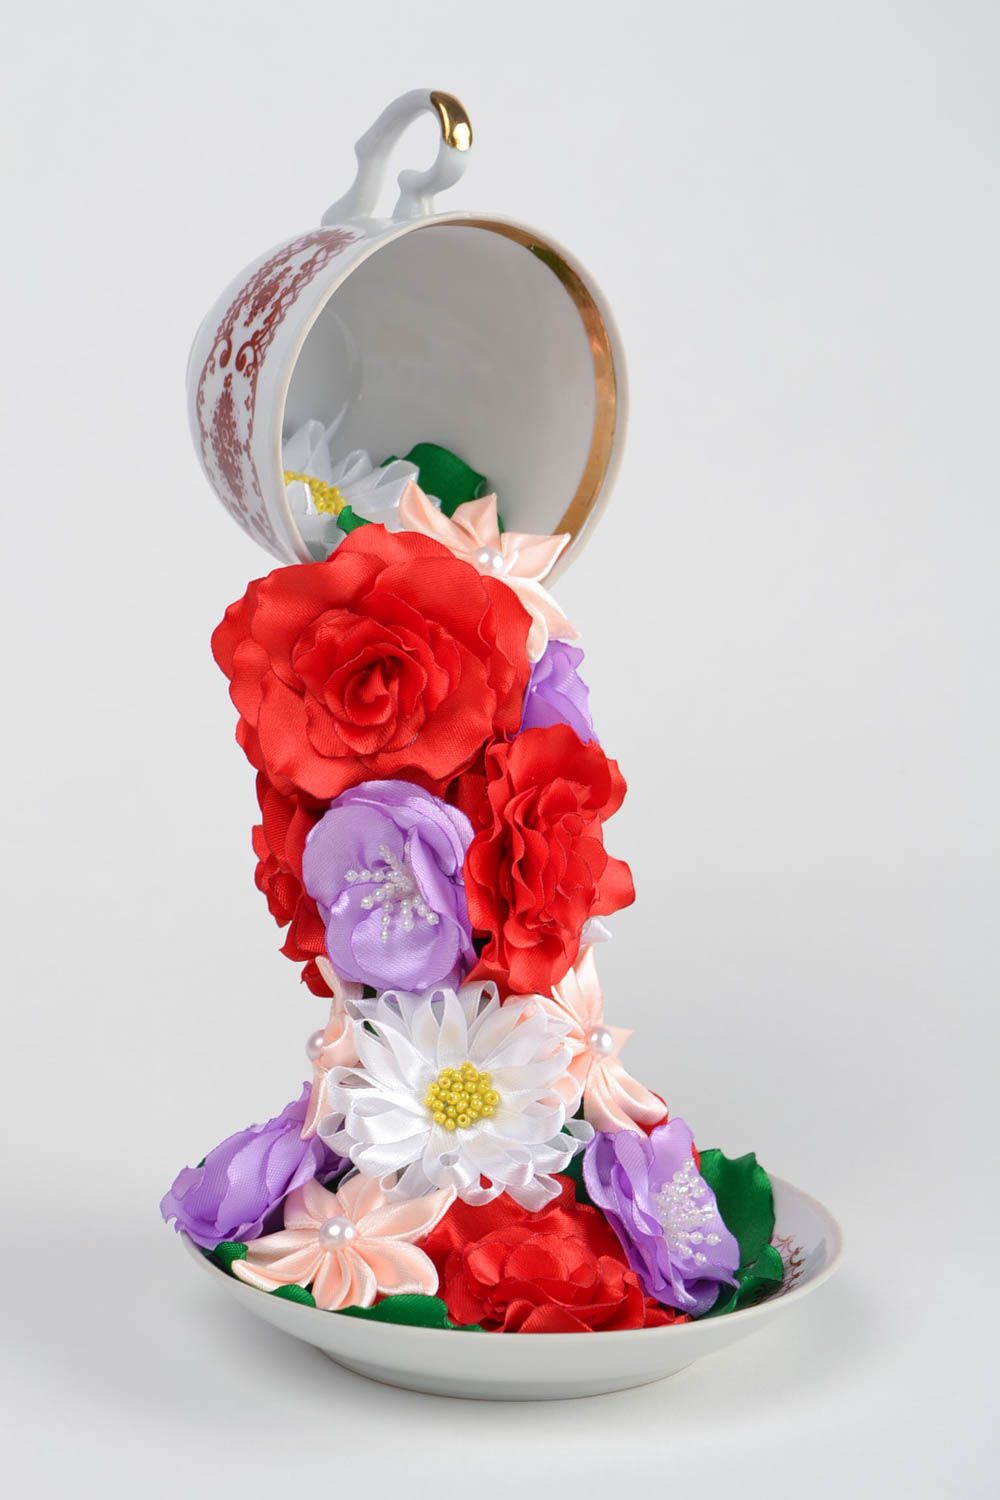 Летающая чашка с цветами из атласных лент проливашка ручной работы авторская фото 1